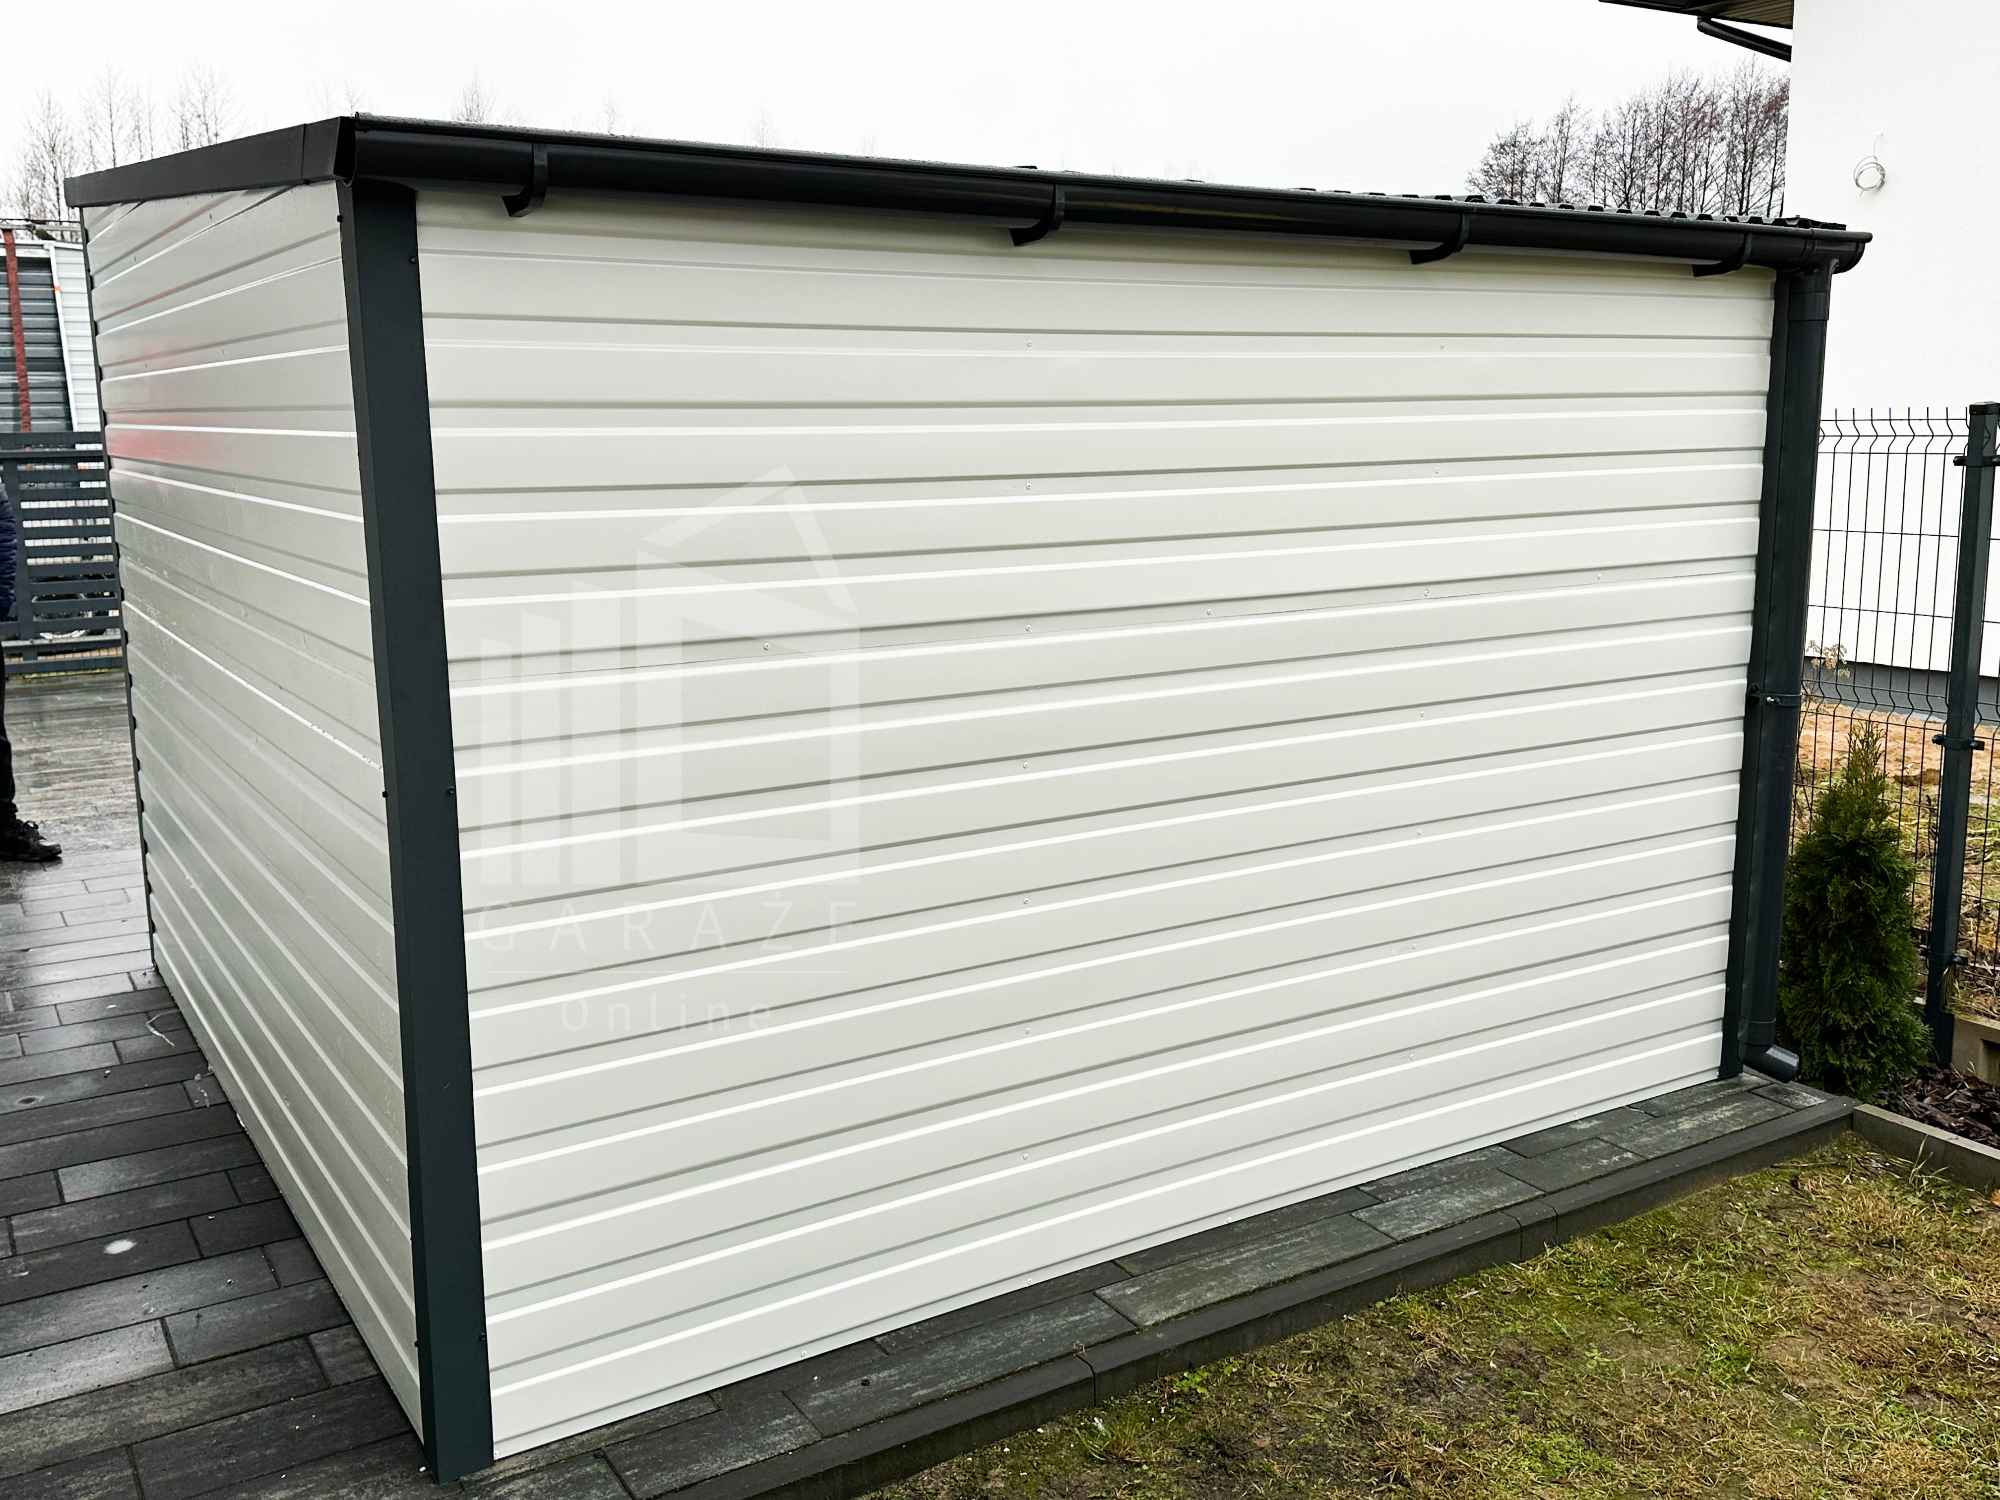 Domek Ogrodowy Schowek Garaż 4x3 Antracyt Rynny dach Spad w Tył ID439 Kostrzyn nad Odrą - zdjęcie 6